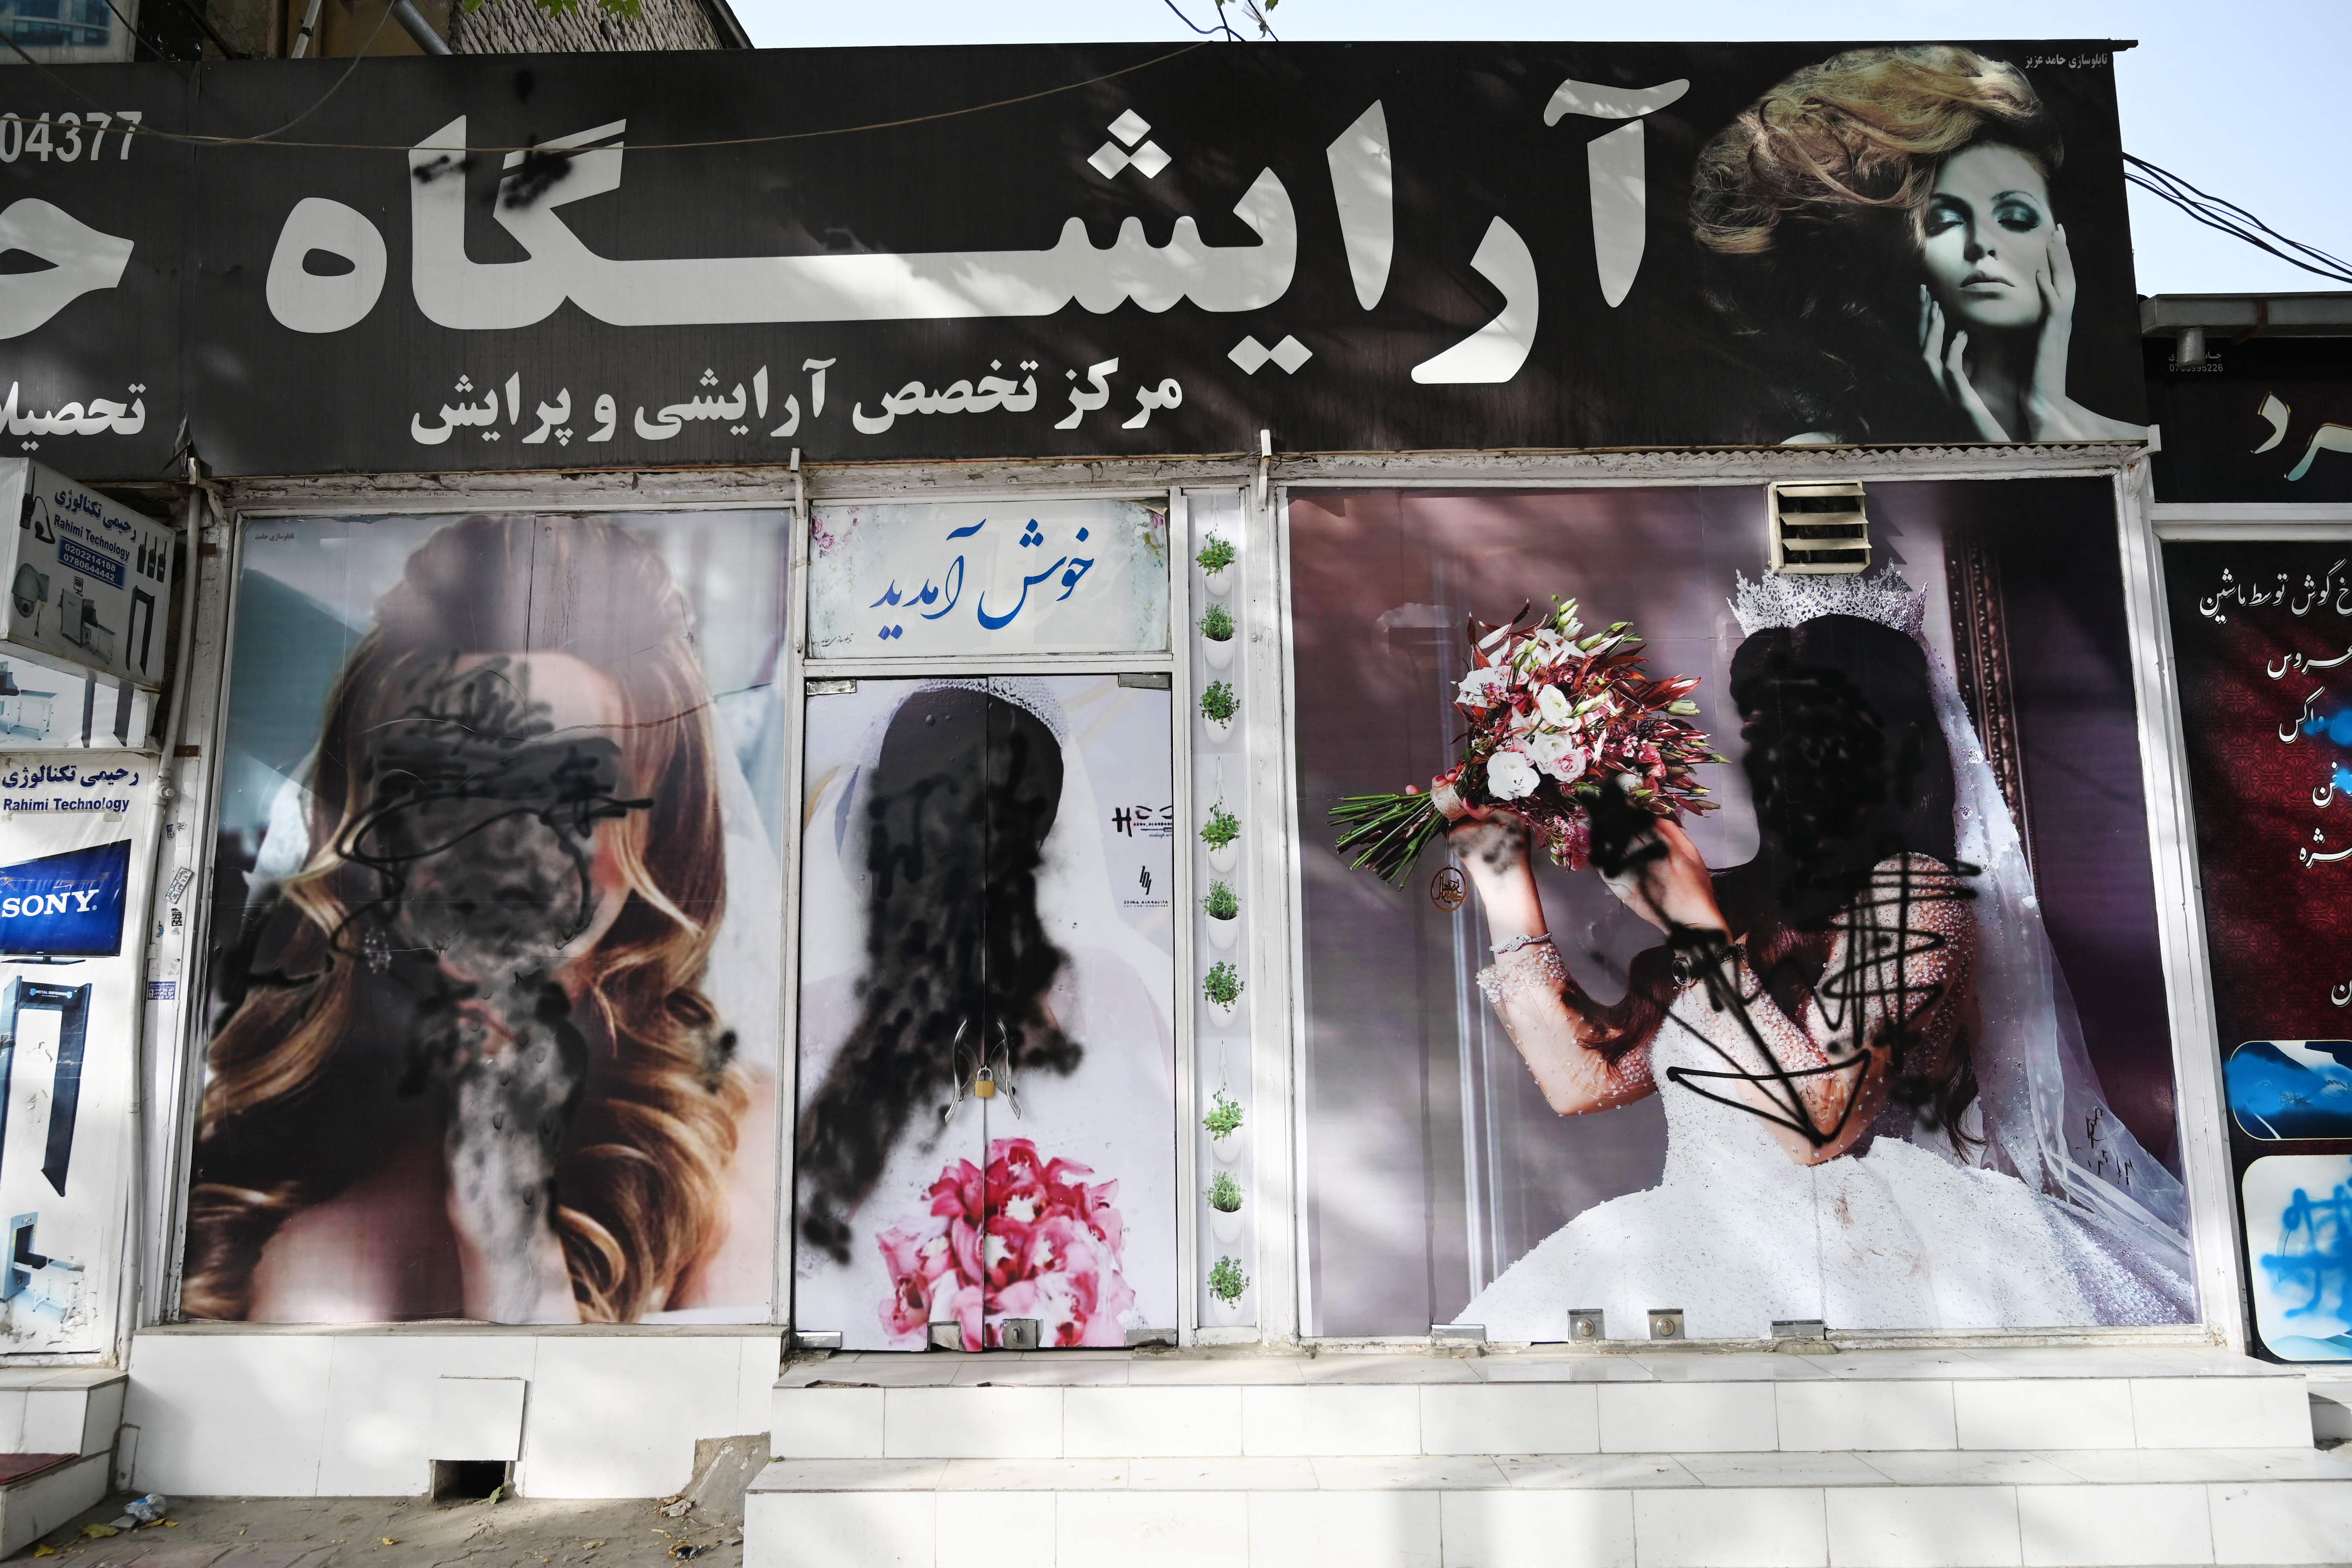 18일(현지시간) 아프가니스탄 수도 카불의 한 미용실. 벽에 내걸린 여성 얼굴 사진에 검은색 스프레이가 칠해져 있다. [사진 출처 : 연합뉴스]